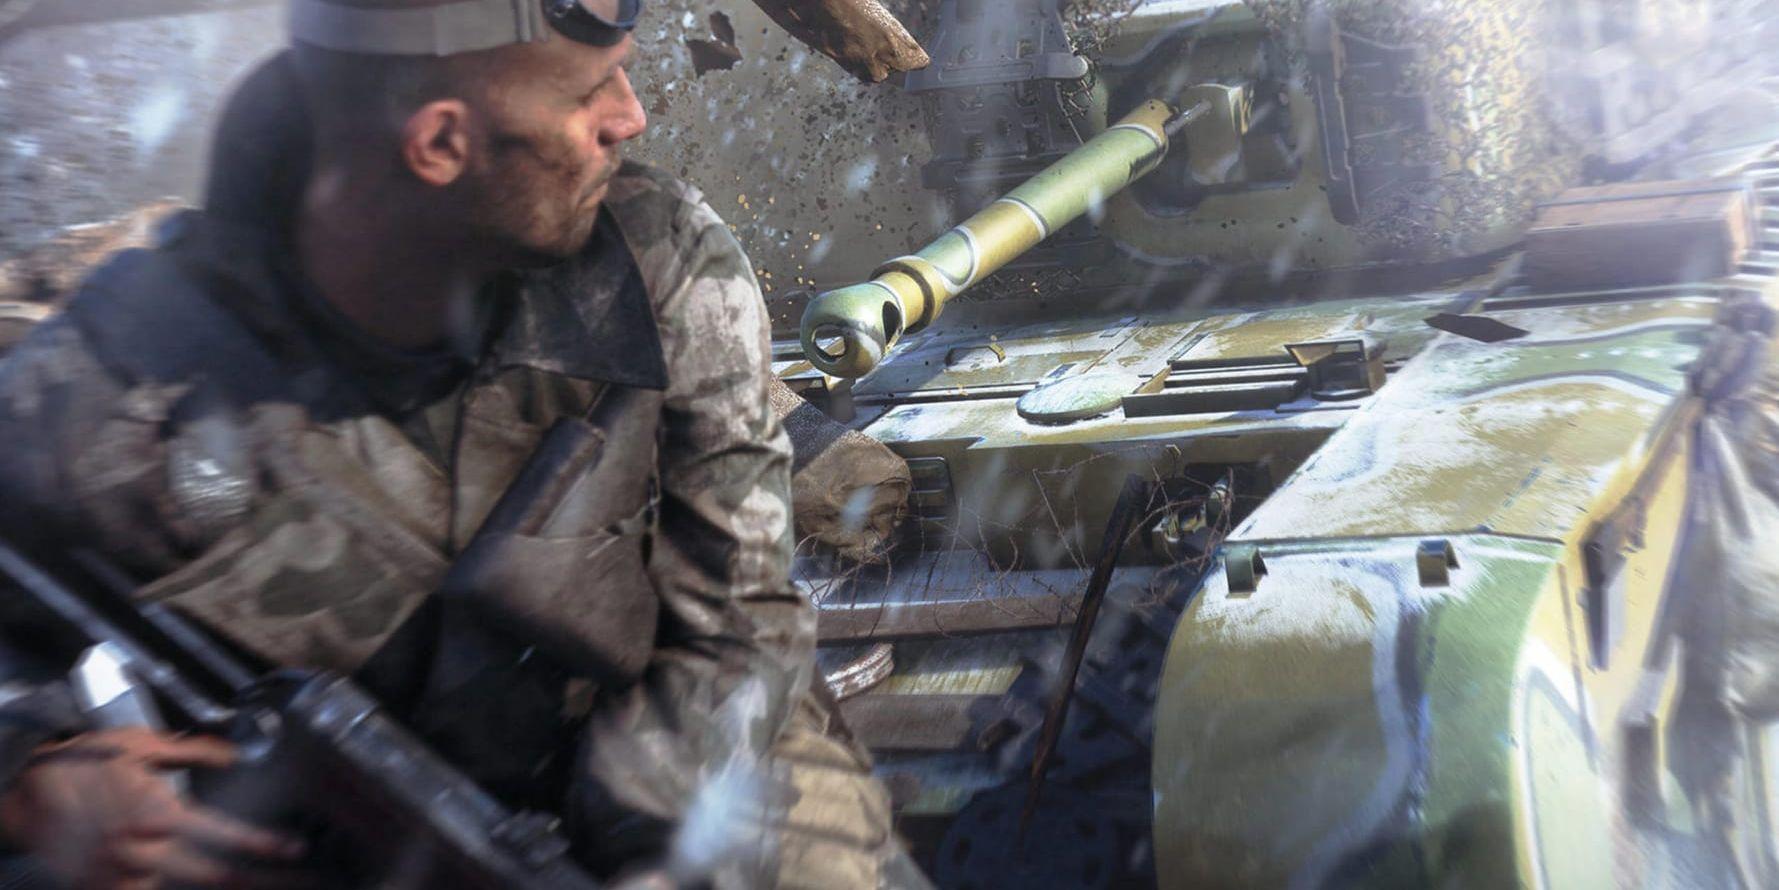 I "Battlefield V" återvänder krigsspelserien till andra världskriget. Pressbild.